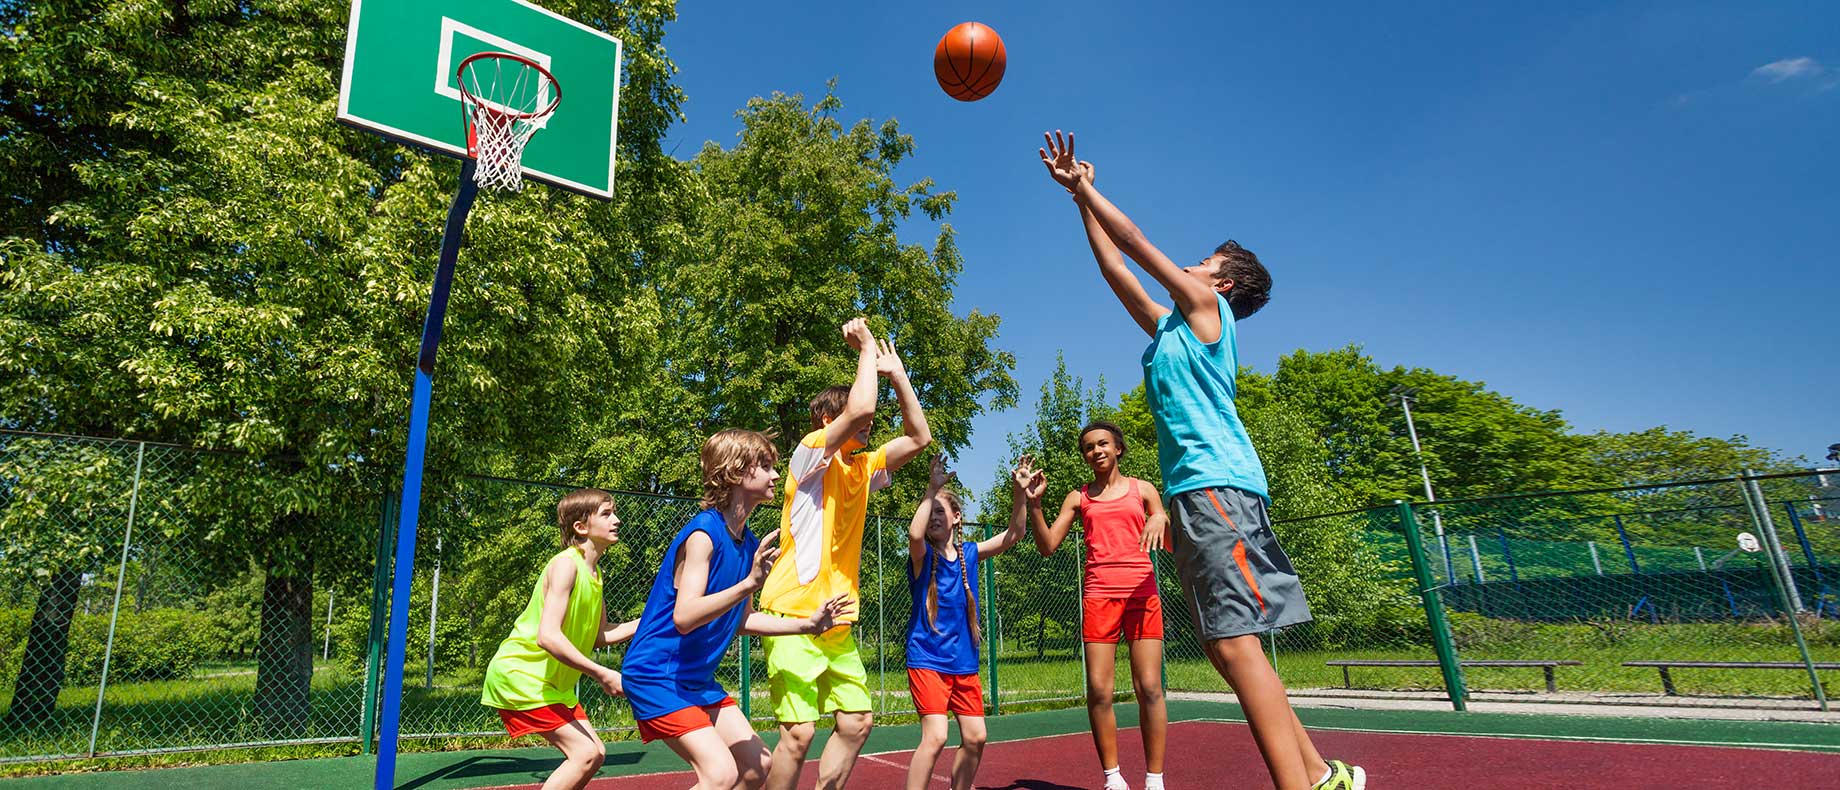 O Jogo de Bola na Escola: Introdução à Pedagogia da rua